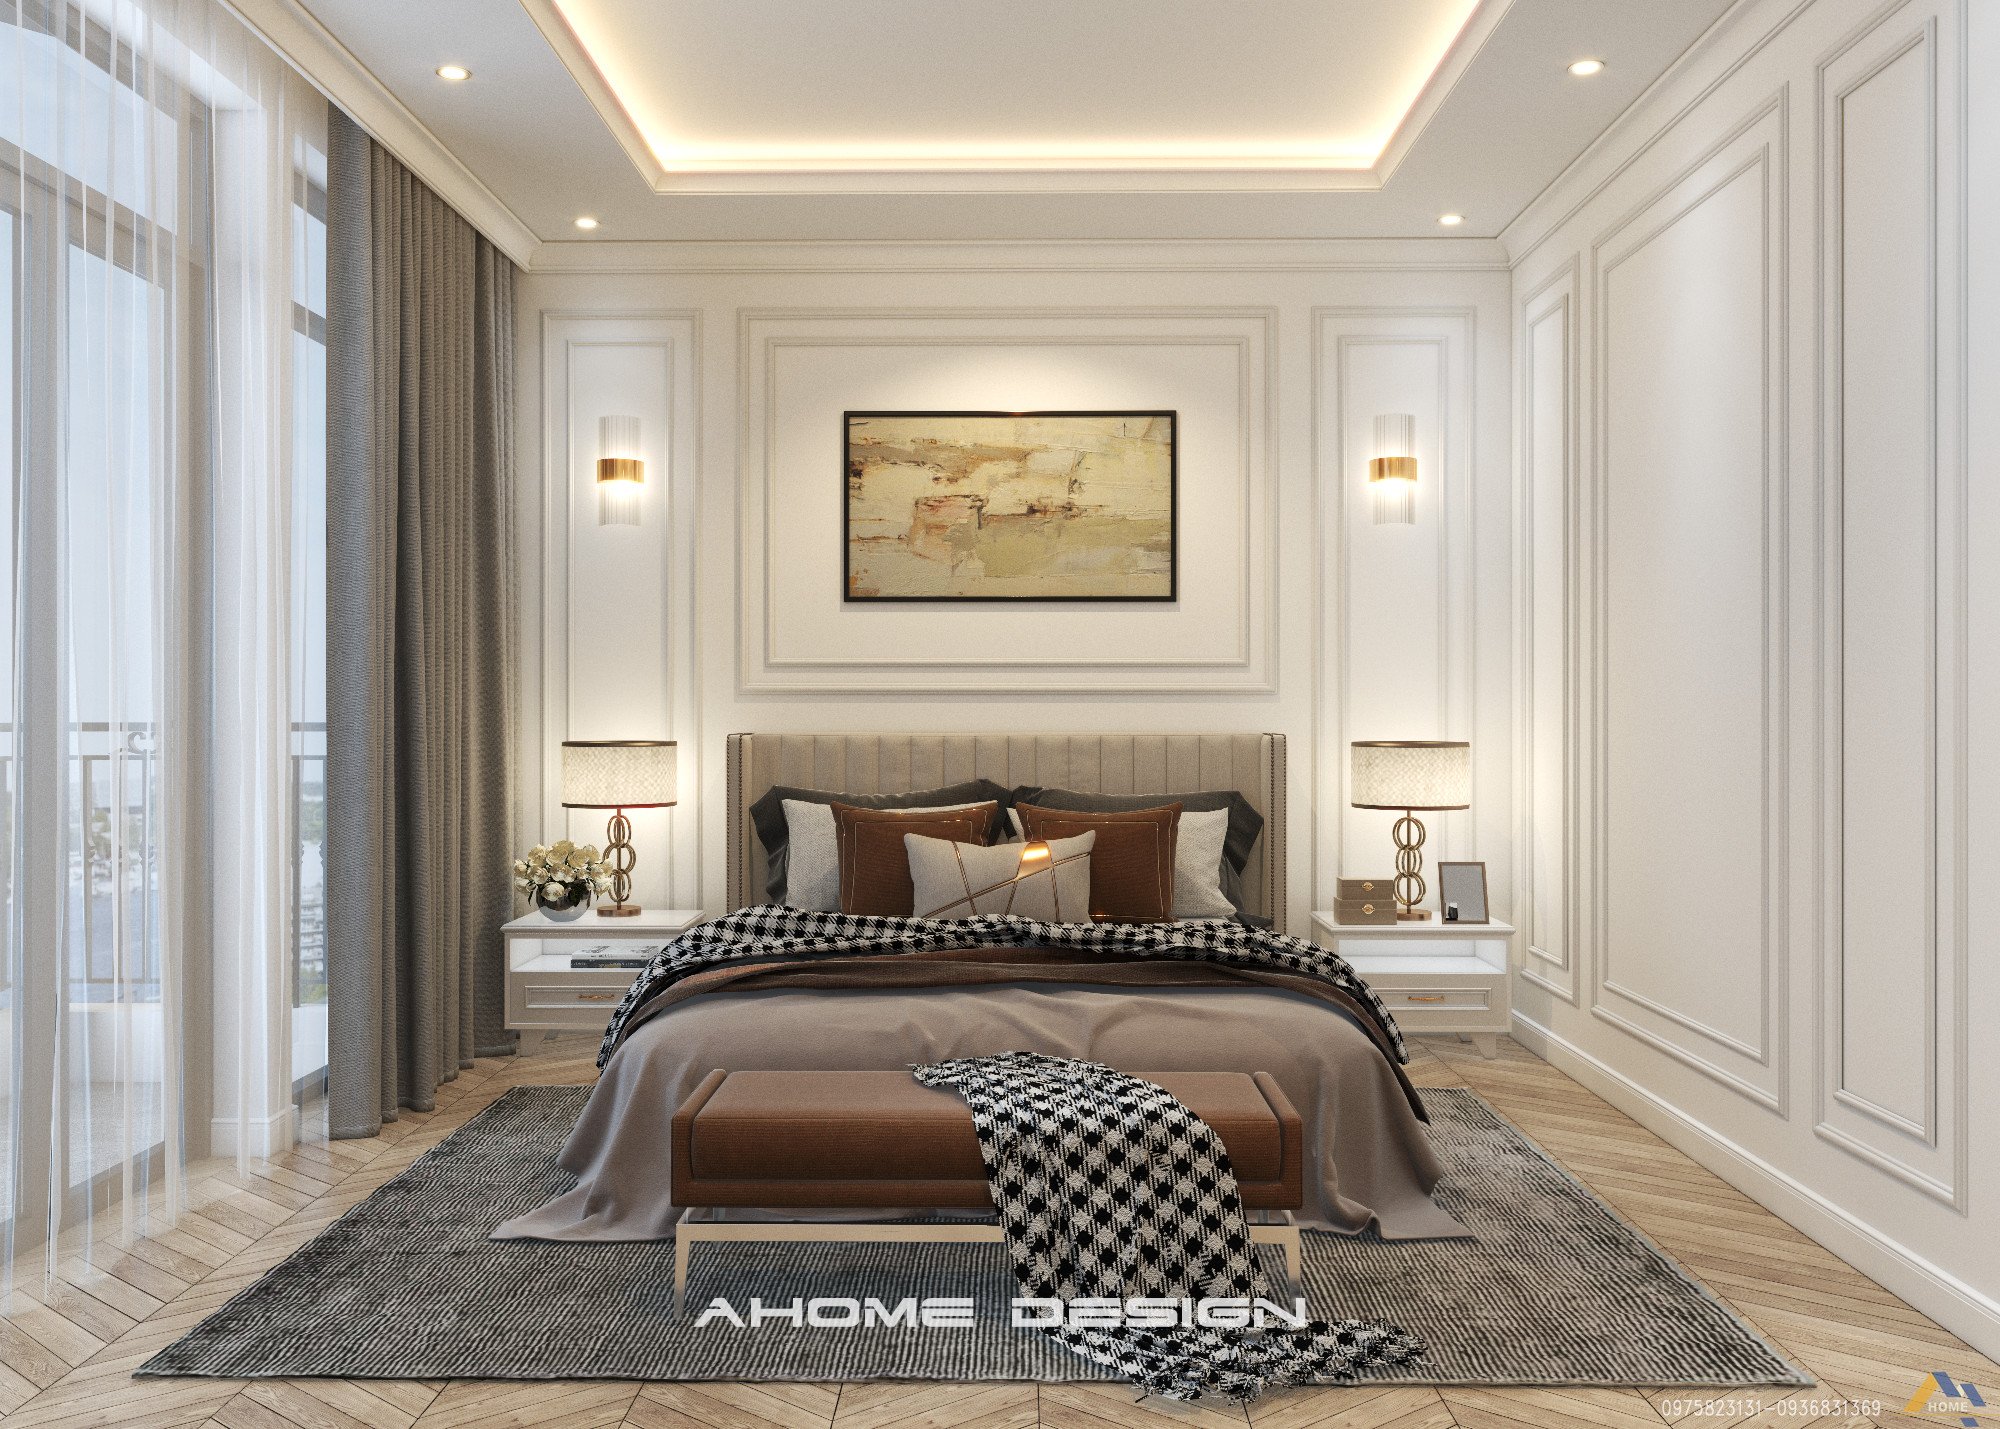 Phòng ngủ với phong cách tân cổ điển với sự tối giản, hiện đại